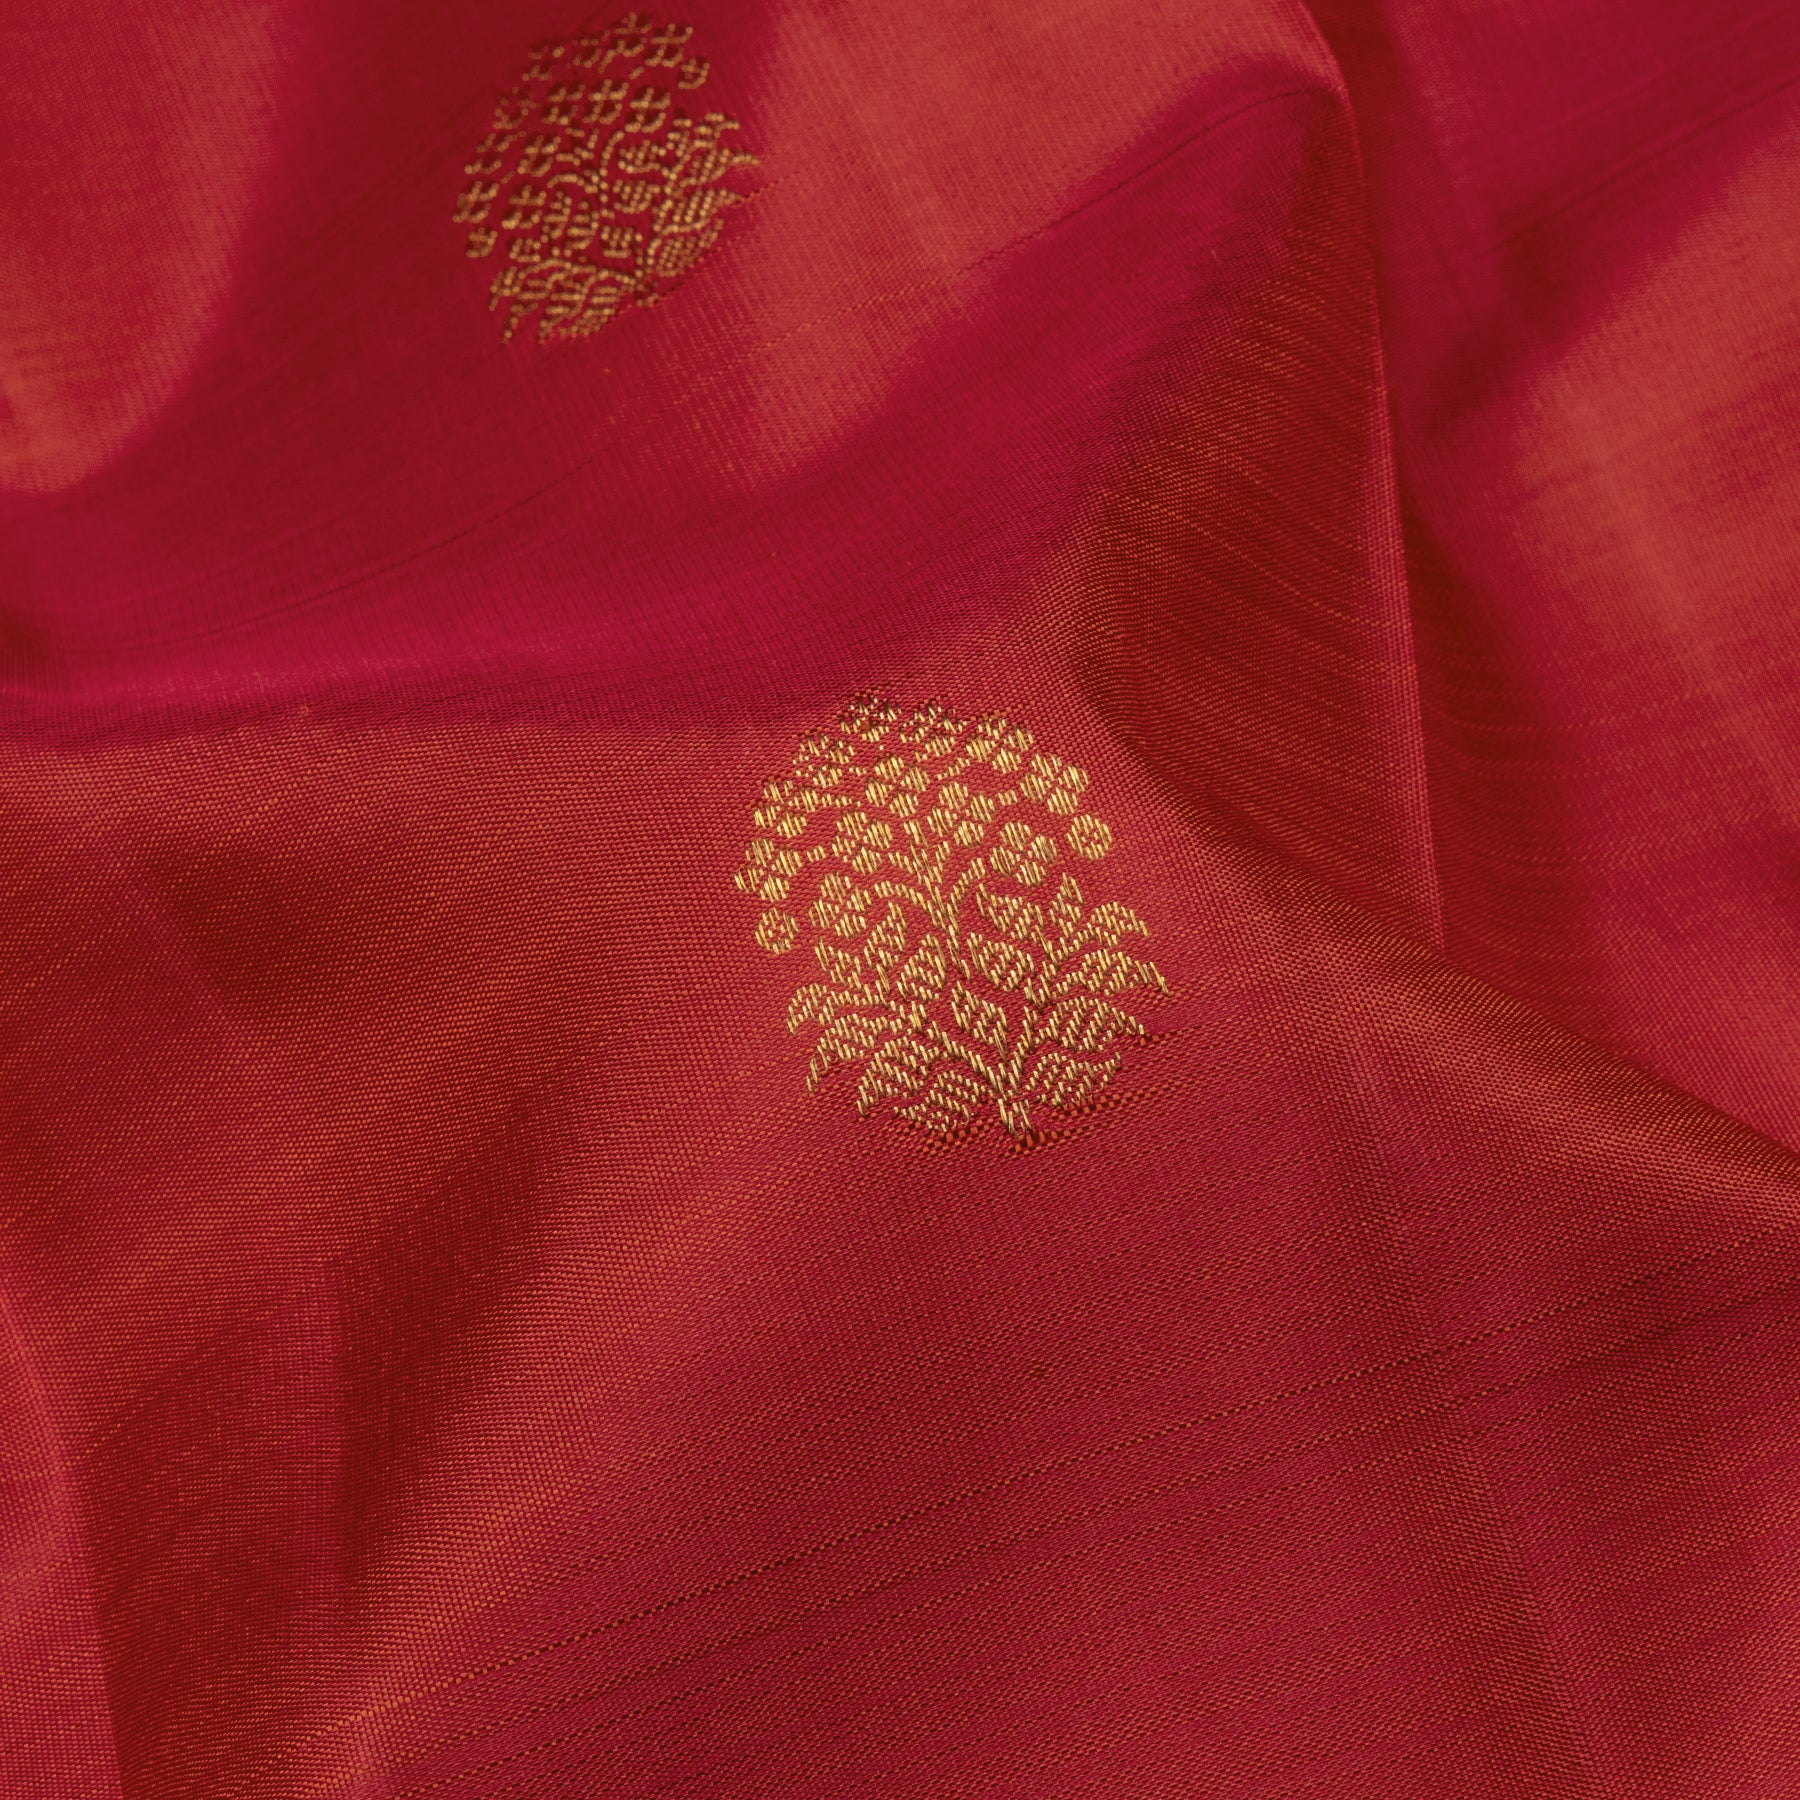 Kanakavalli Kanjivaram Silk Sari 23-595-HS001-13641 - Fabric View